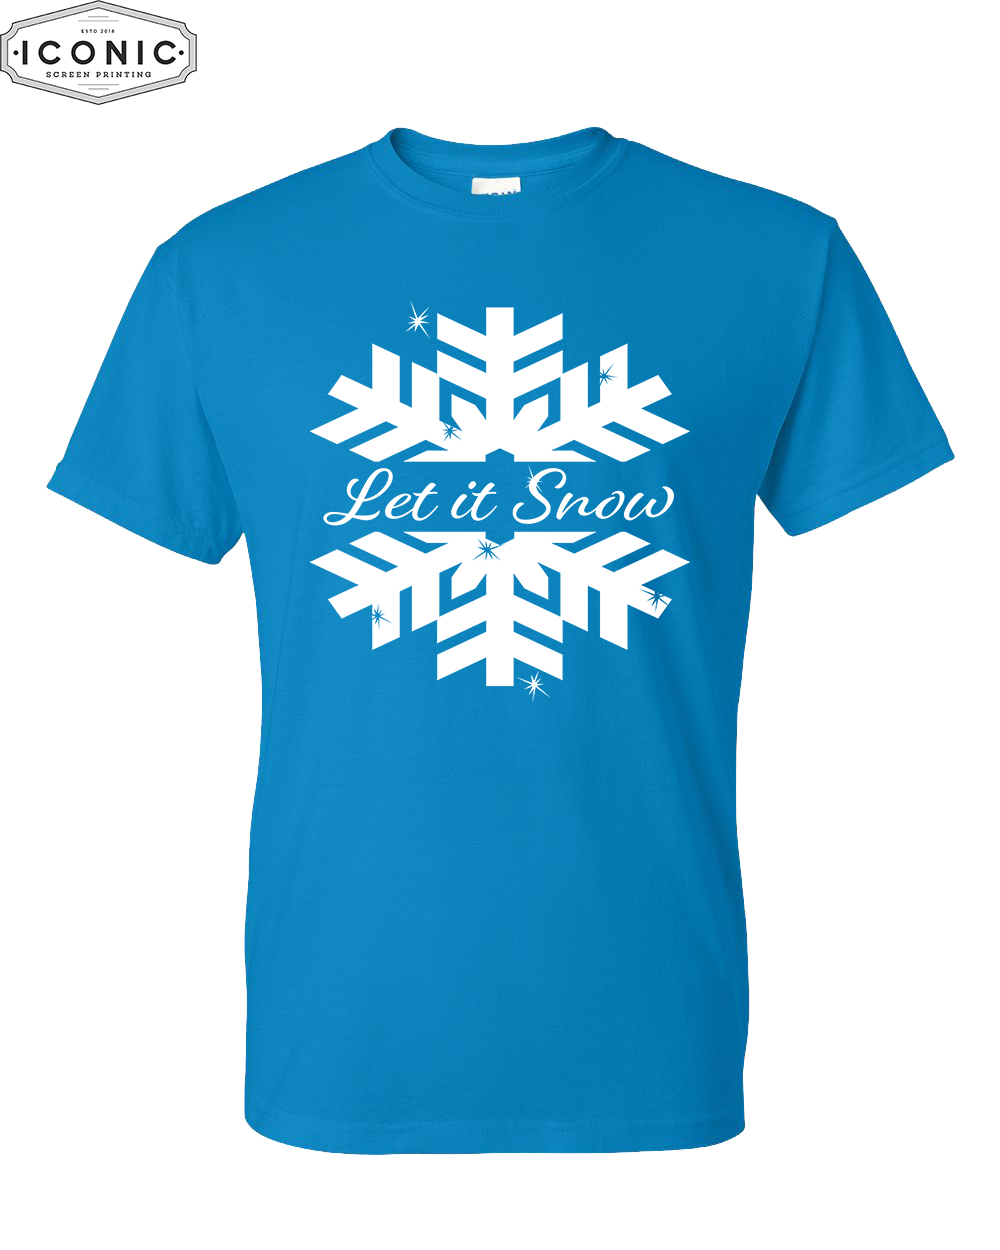 Let It Snow - DryBlend T-shirt